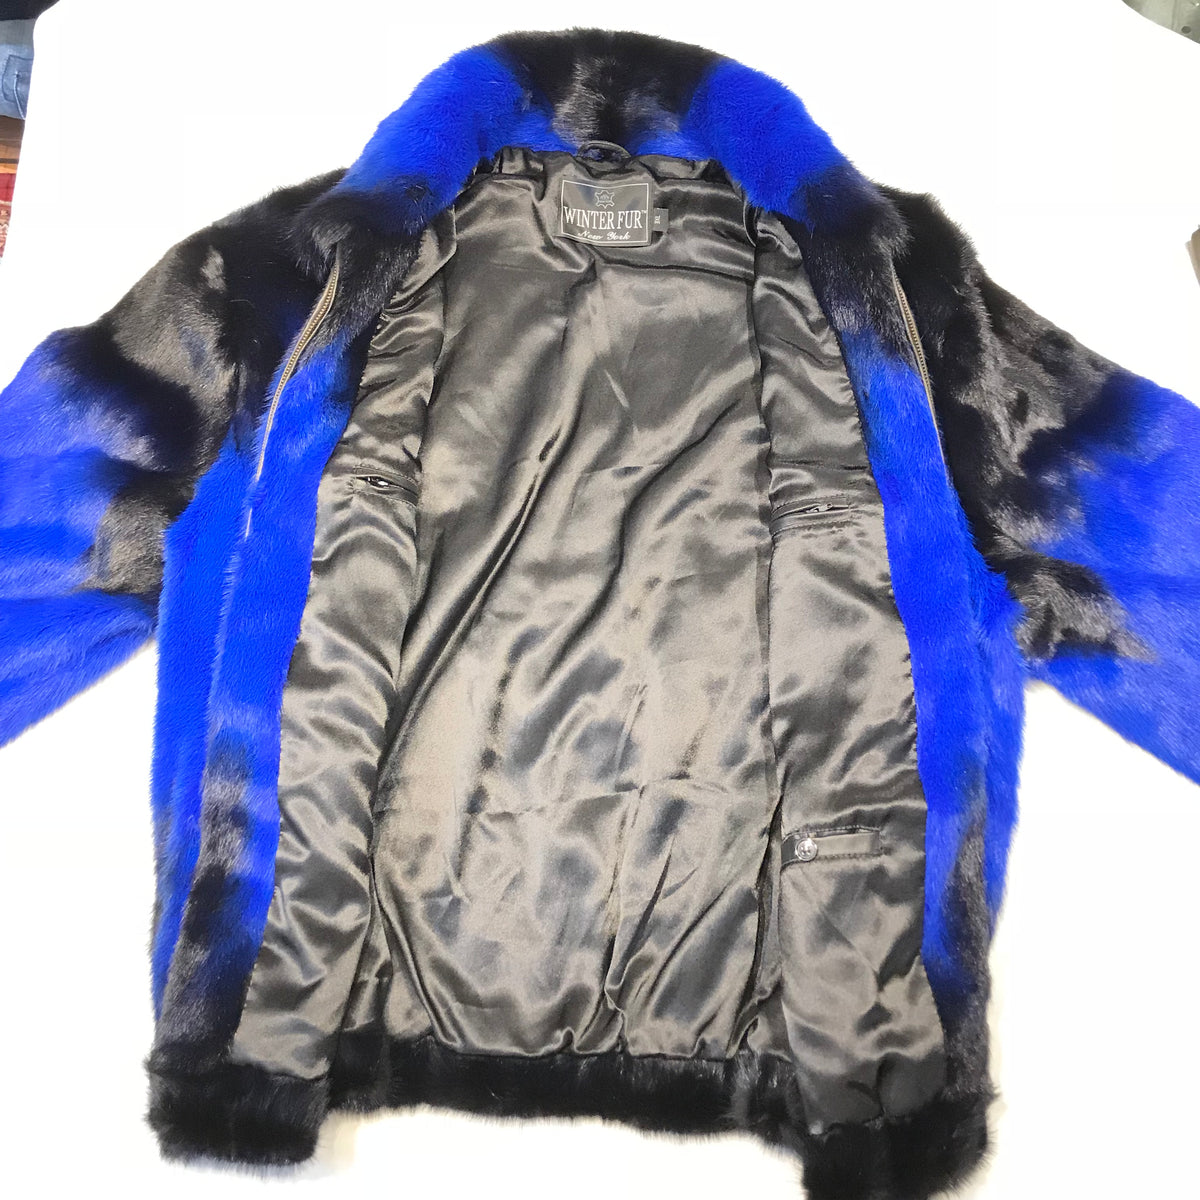 Kashani Blue Black Full Mink Fur Coat - Dudes Boutique